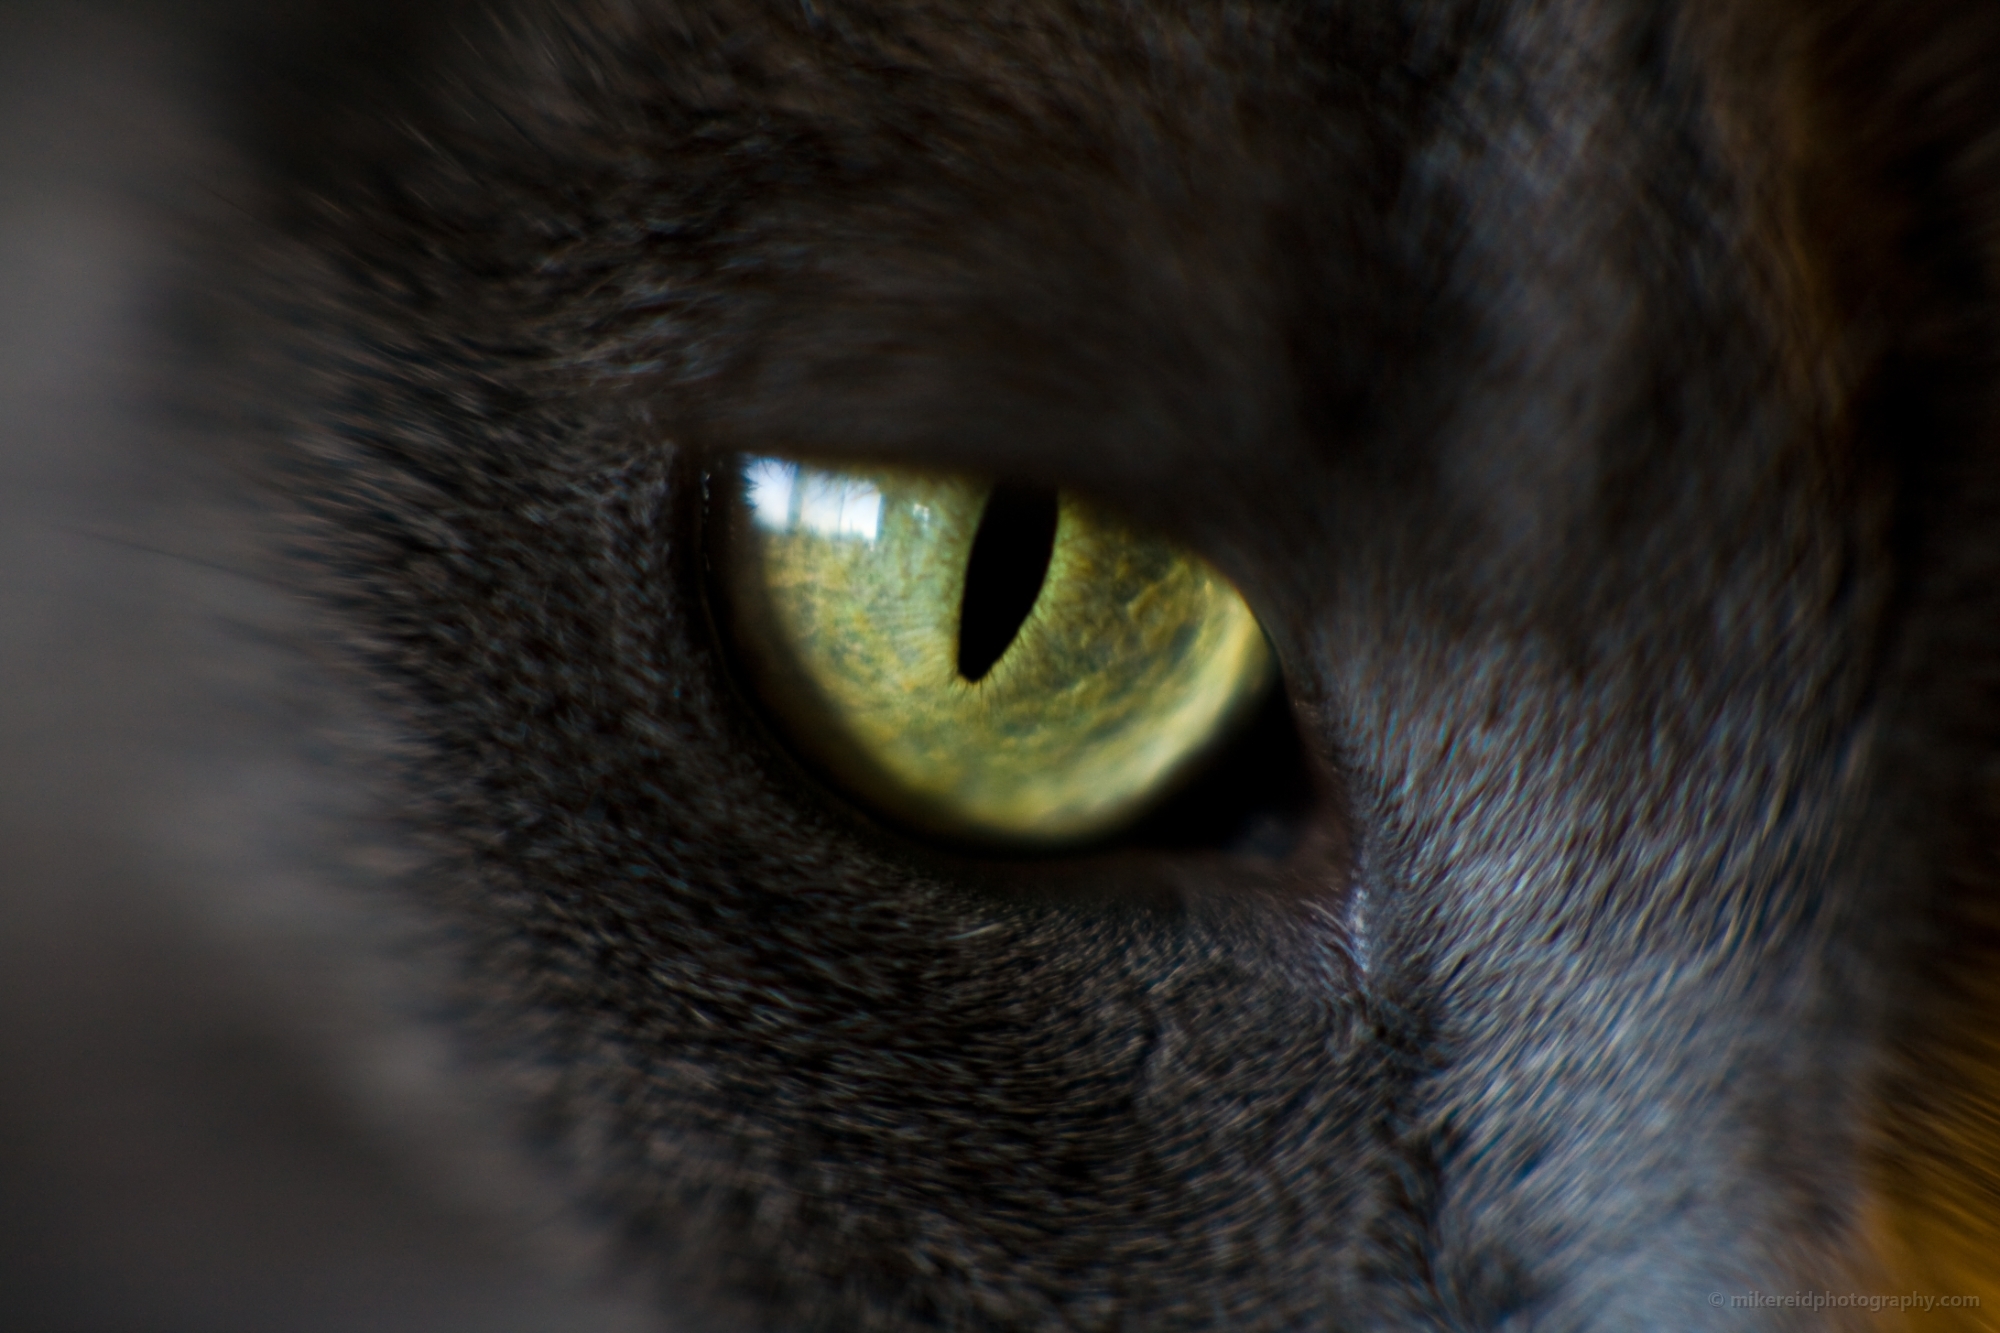 Cats Eyes